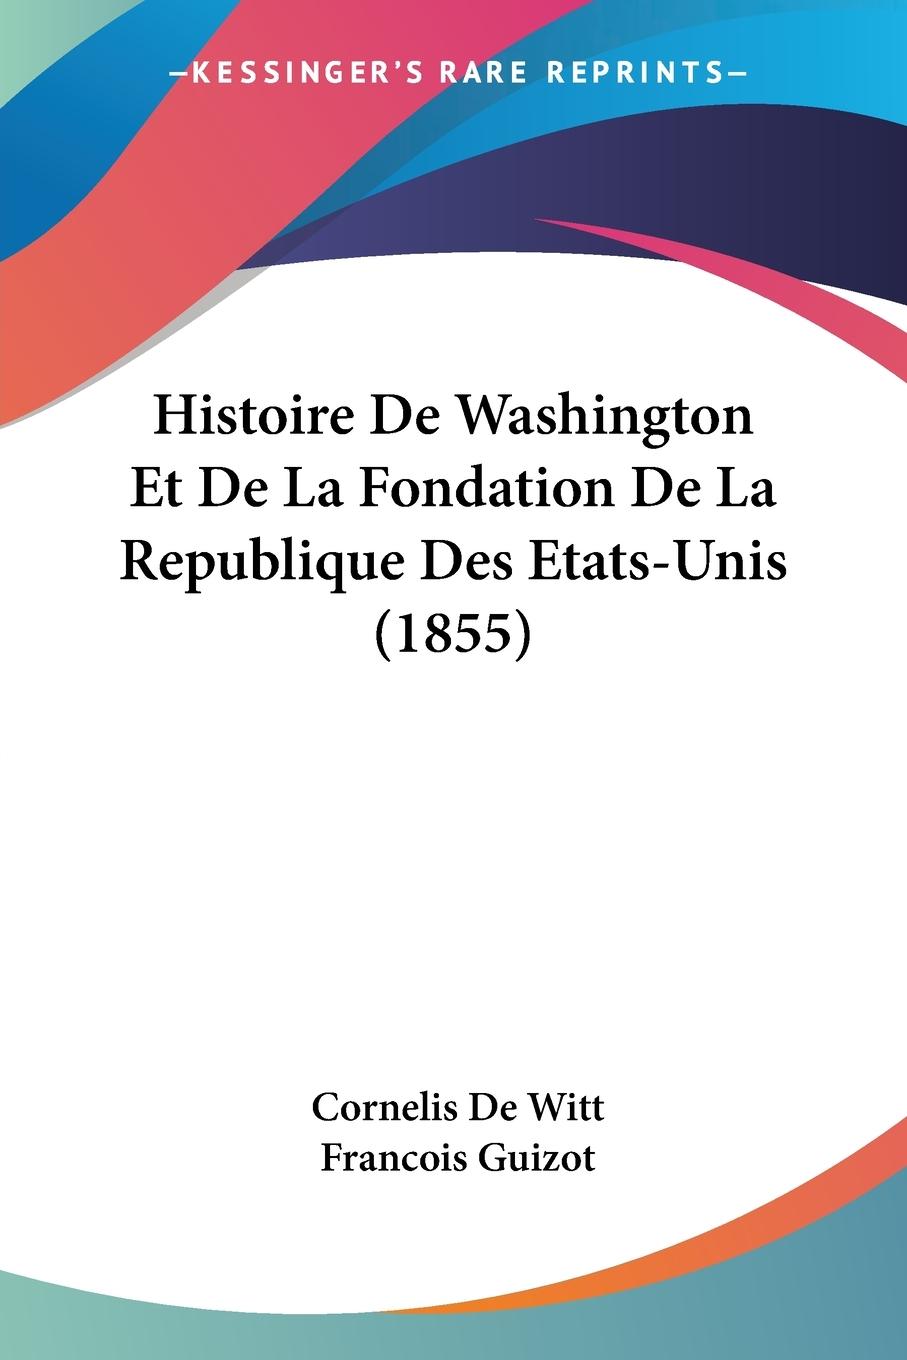 Histoire De Washington Et De La Fondation De La Republique Des Etats-Unis (1855) - De Witt, Cornelis Guizot, Francois